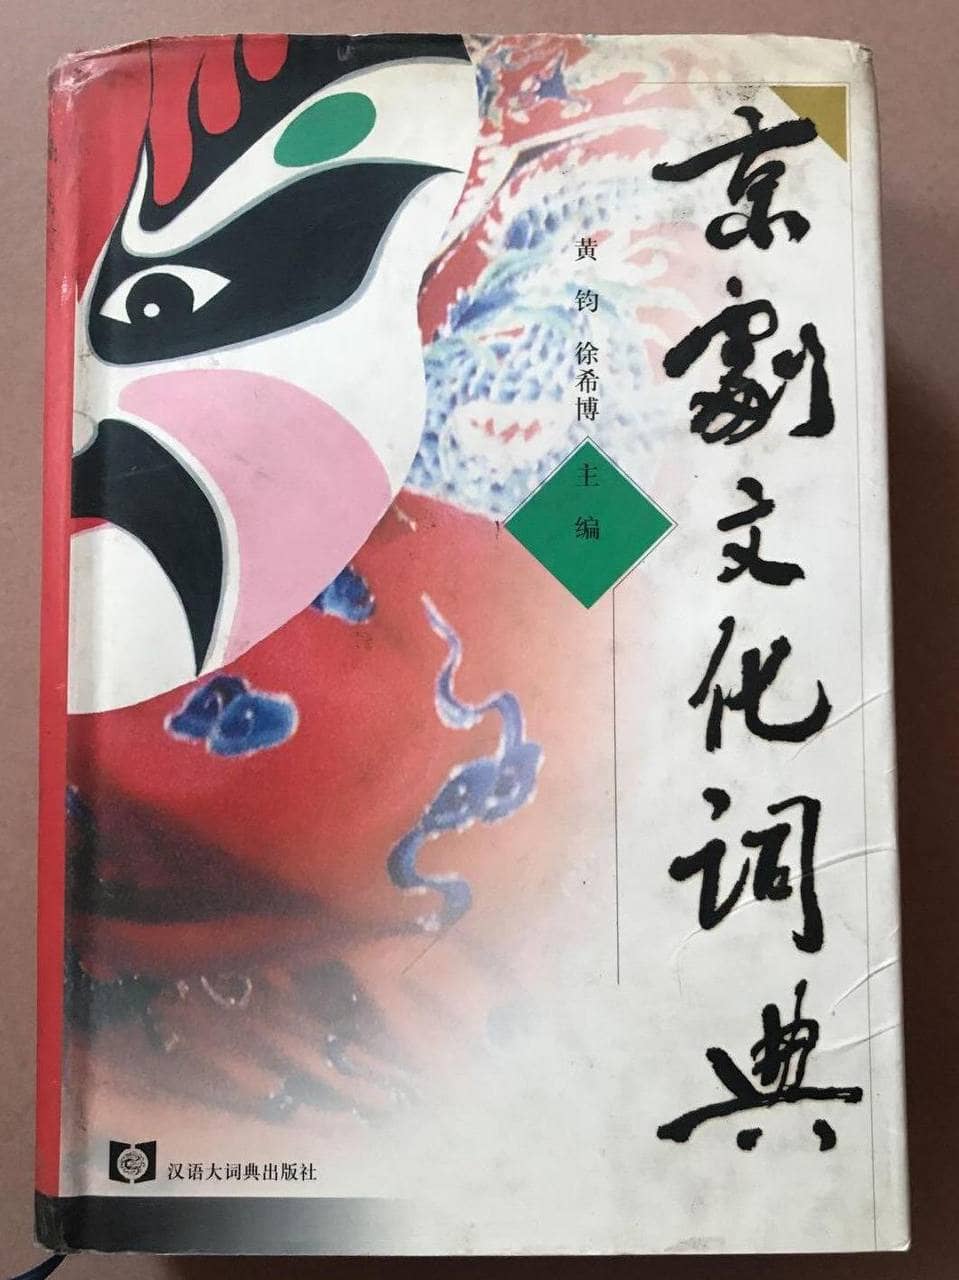 京剧文化词典 | 电子书籍